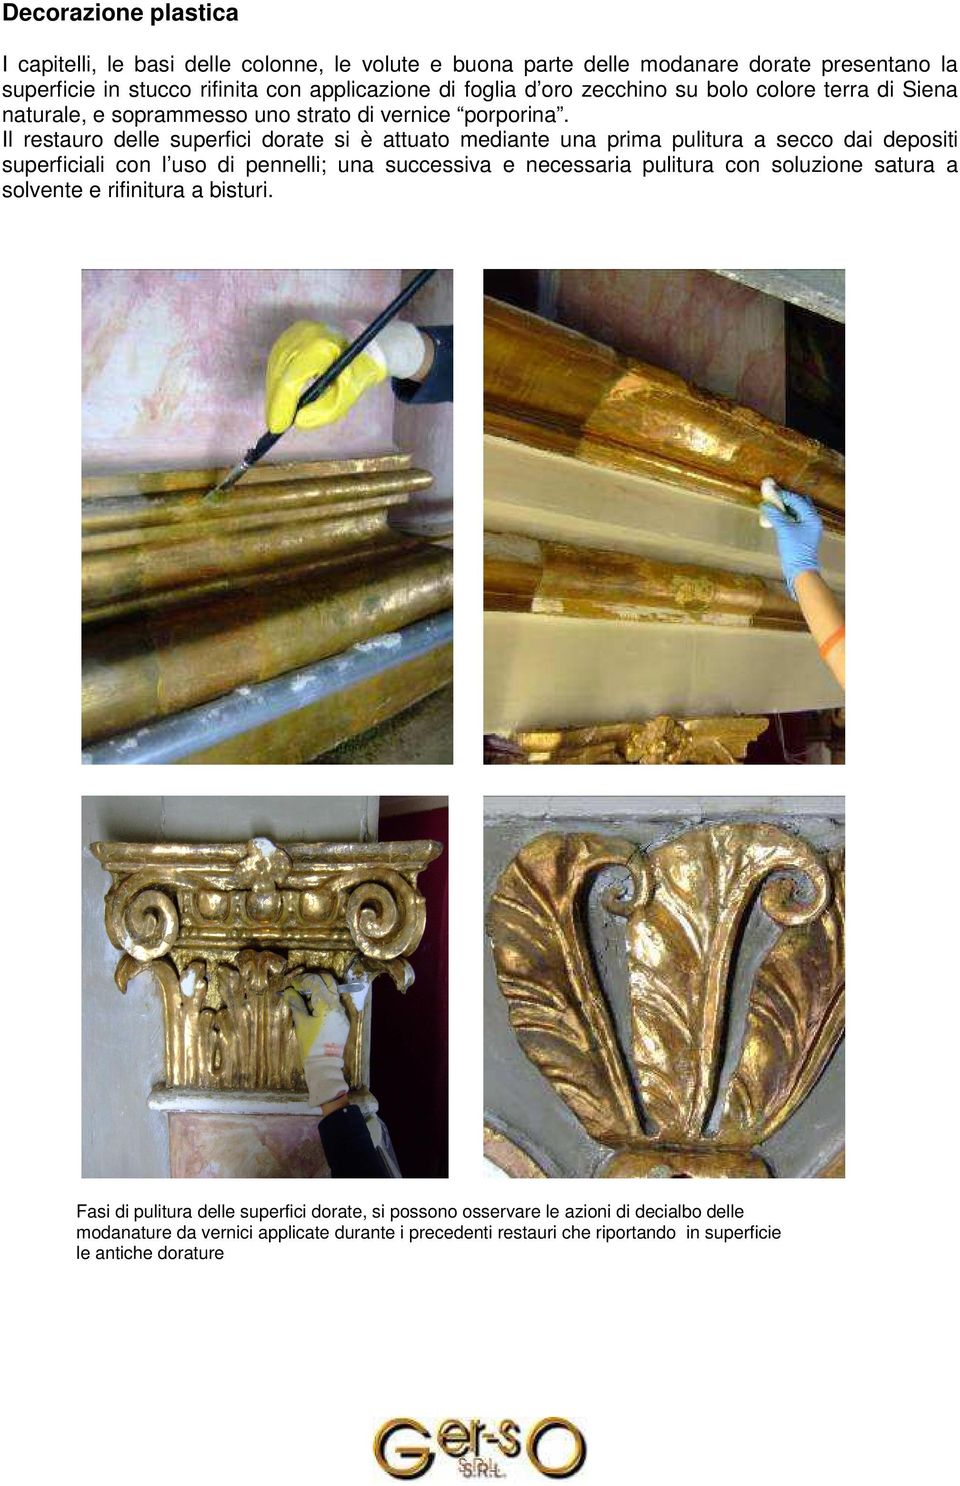 Il restauro delle superfici dorate si è attuato mediante una prima pulitura a secco dai depositi superficiali con l uso di pennelli; una successiva e necessaria pulitura con